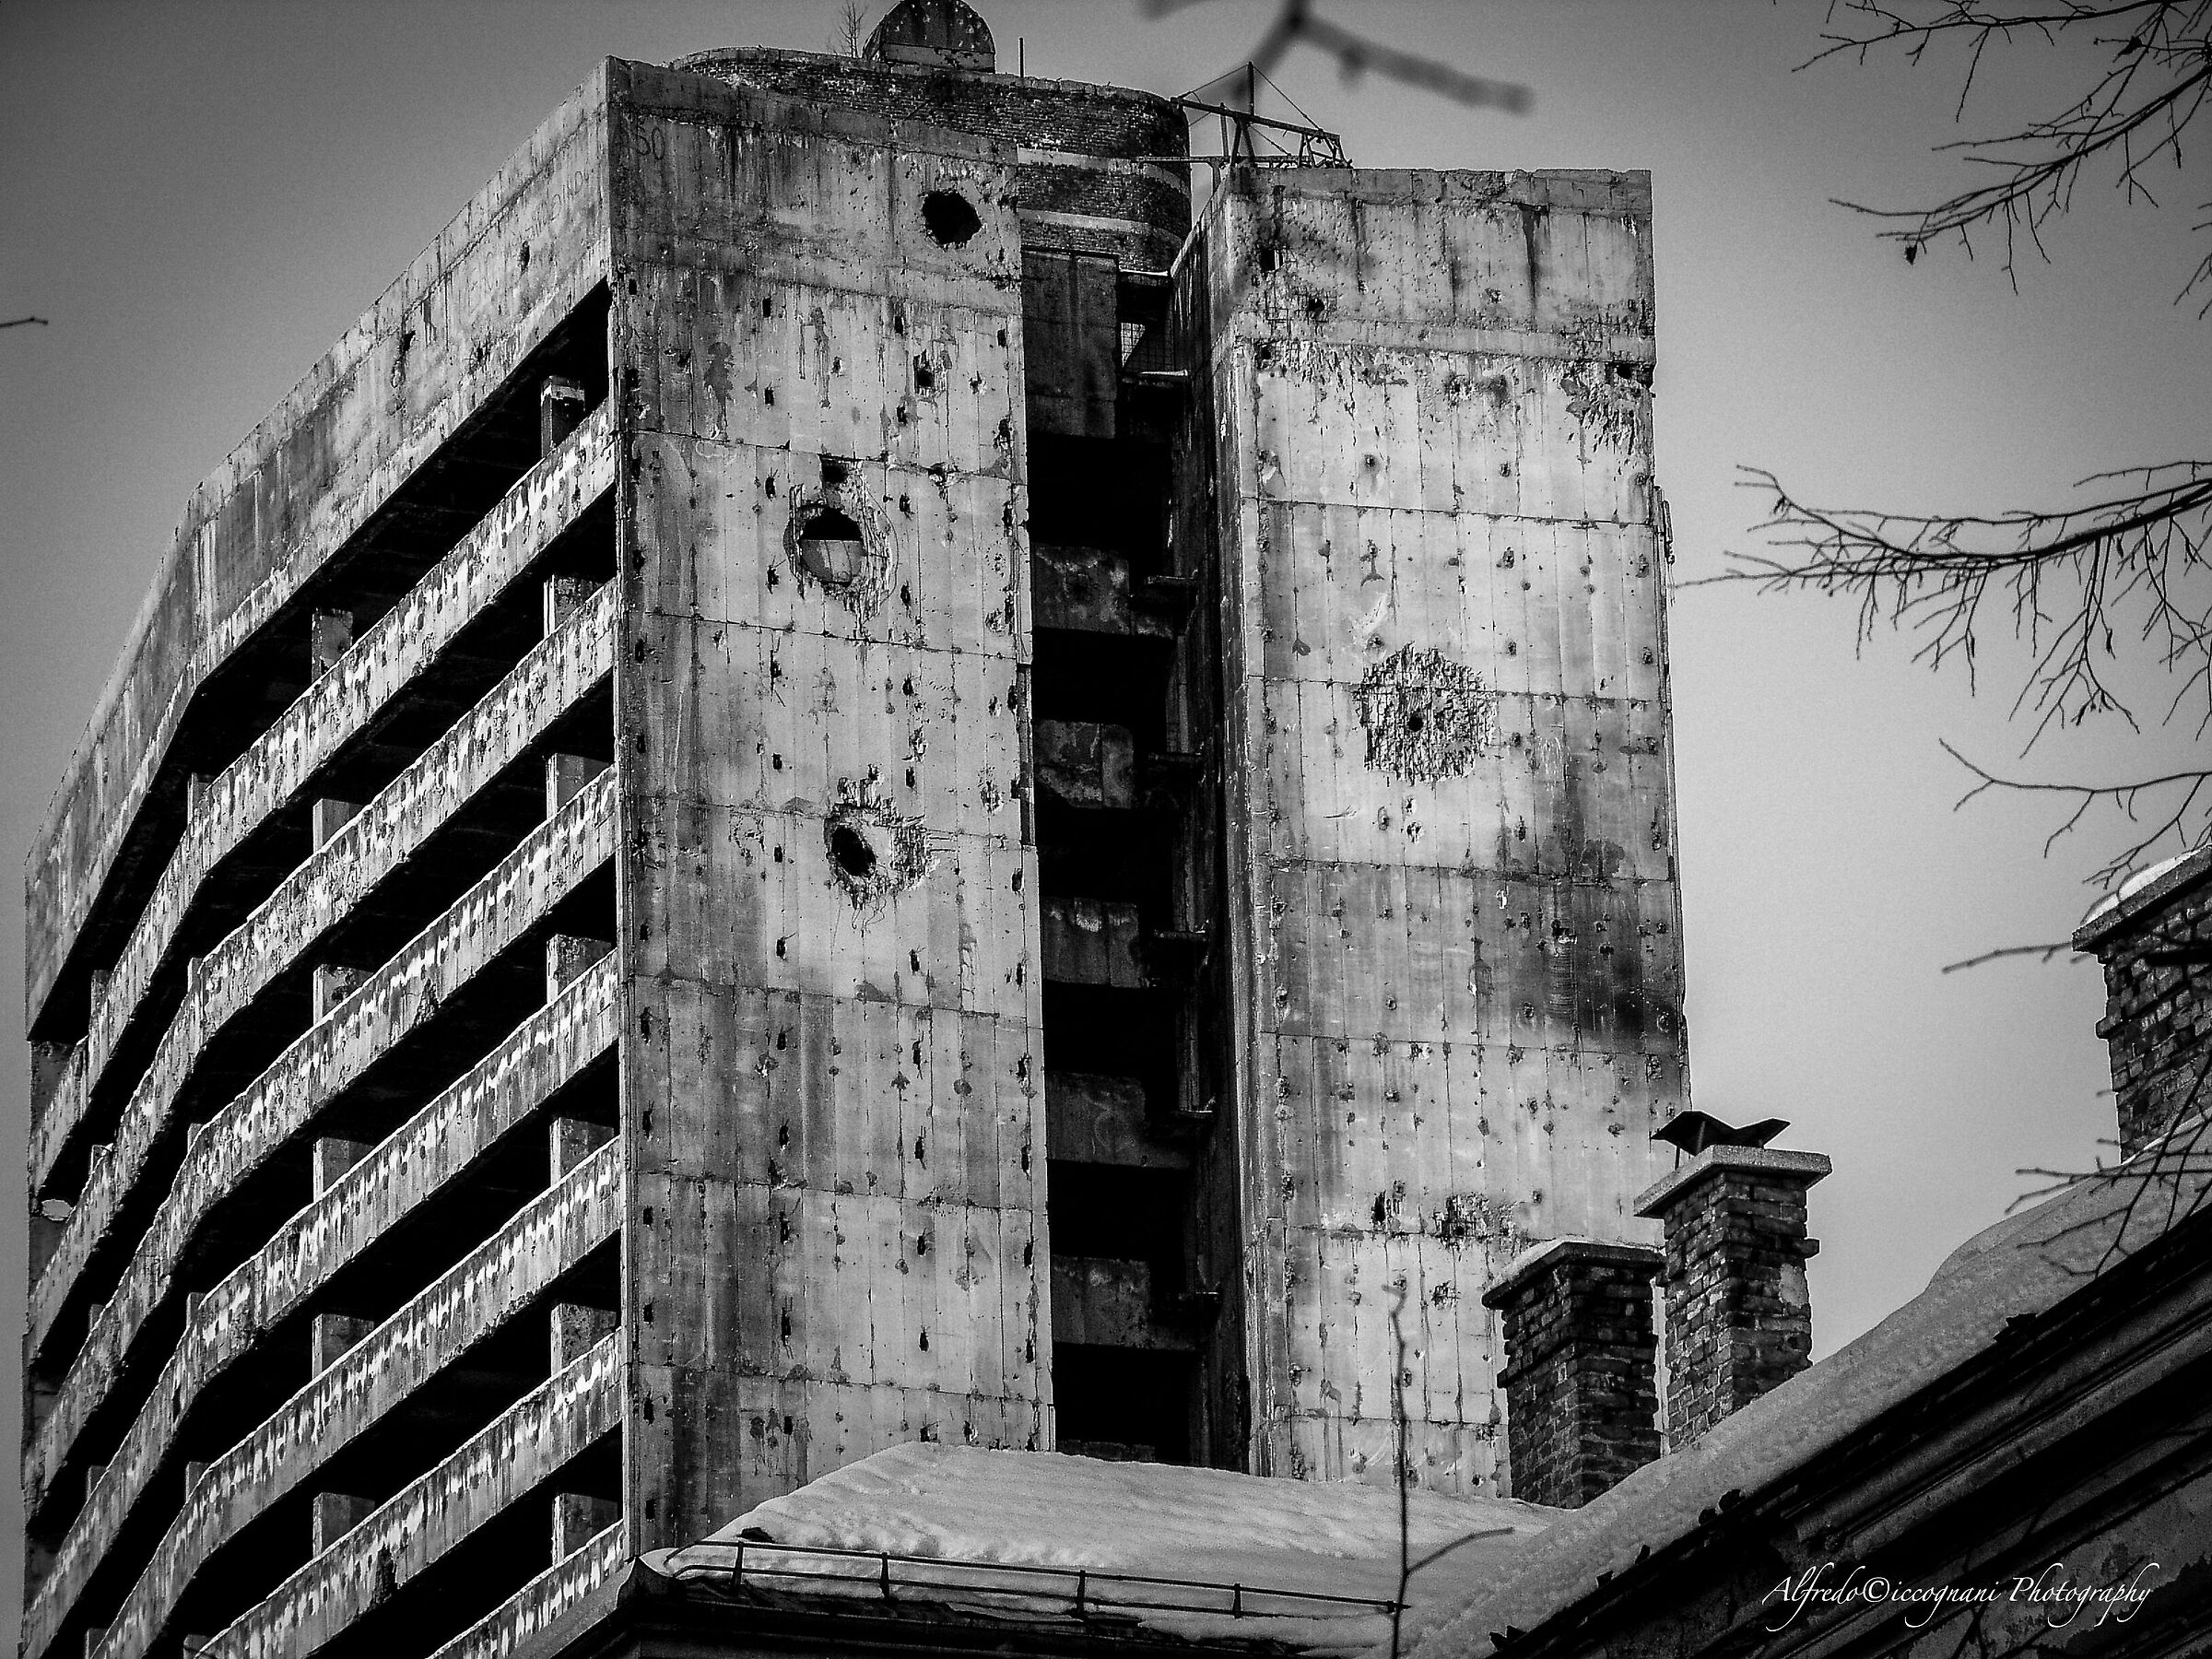 Sarajevo's famous bombed skyscraper...